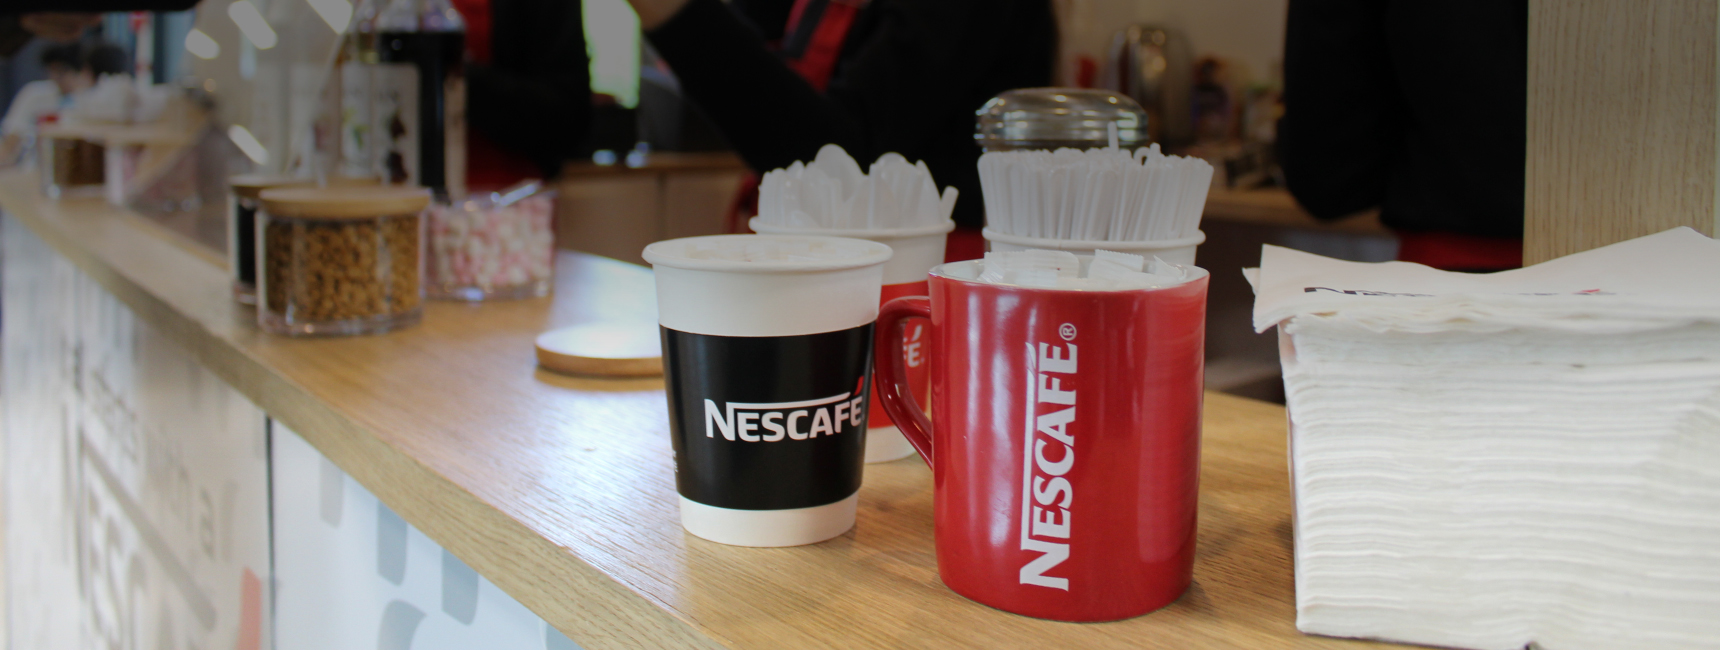 Nescafé - activation experientielle - Keemia Campus Agence marketing experientiel